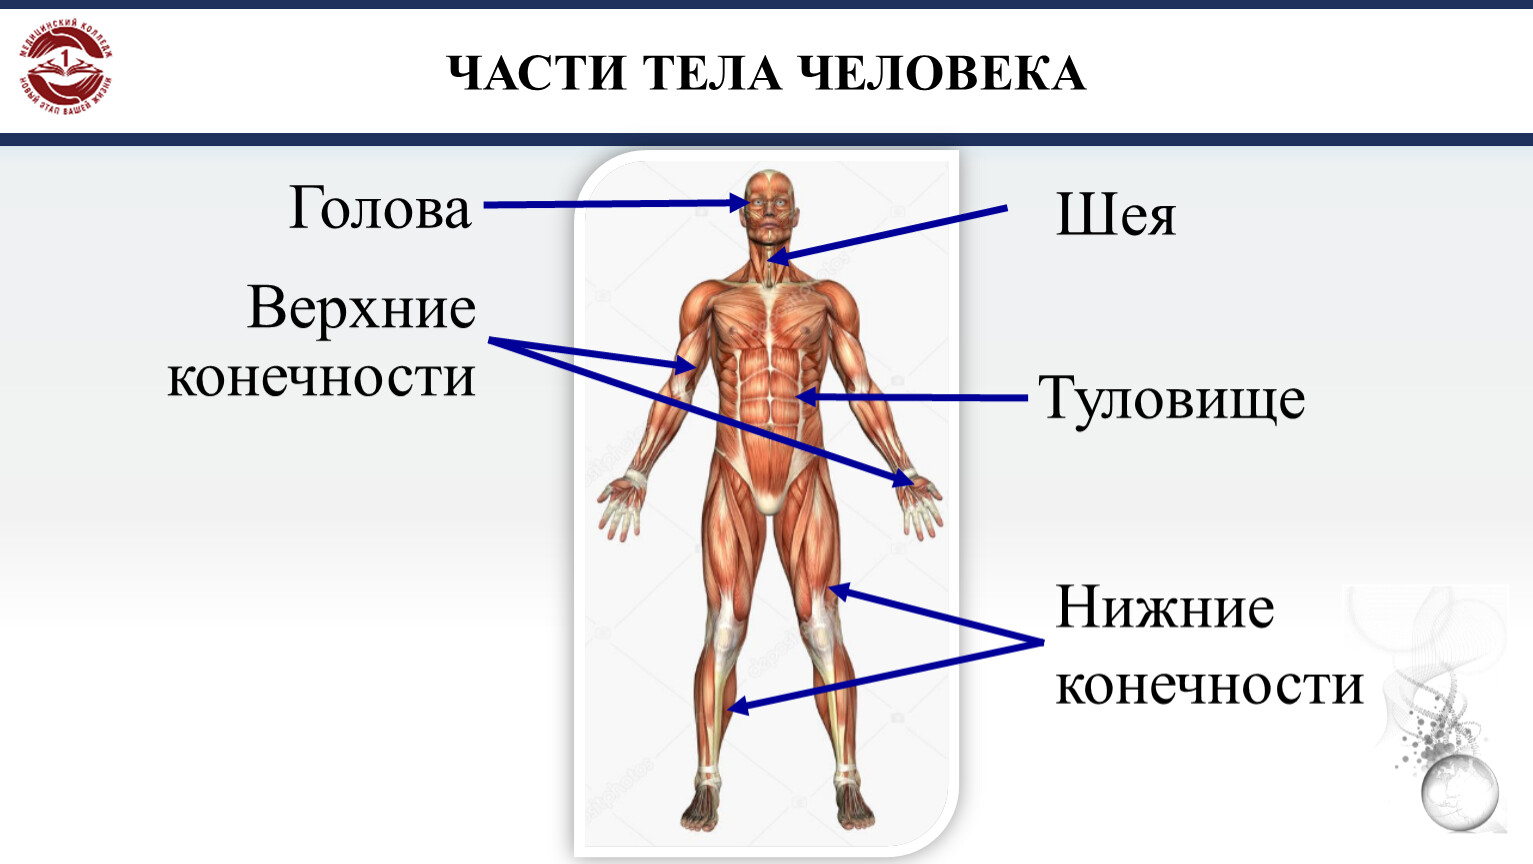 Название частей человека. Части тела человека. Части тела человека названия. Название человеческих частей тела. Анатомия человека части тела названия.